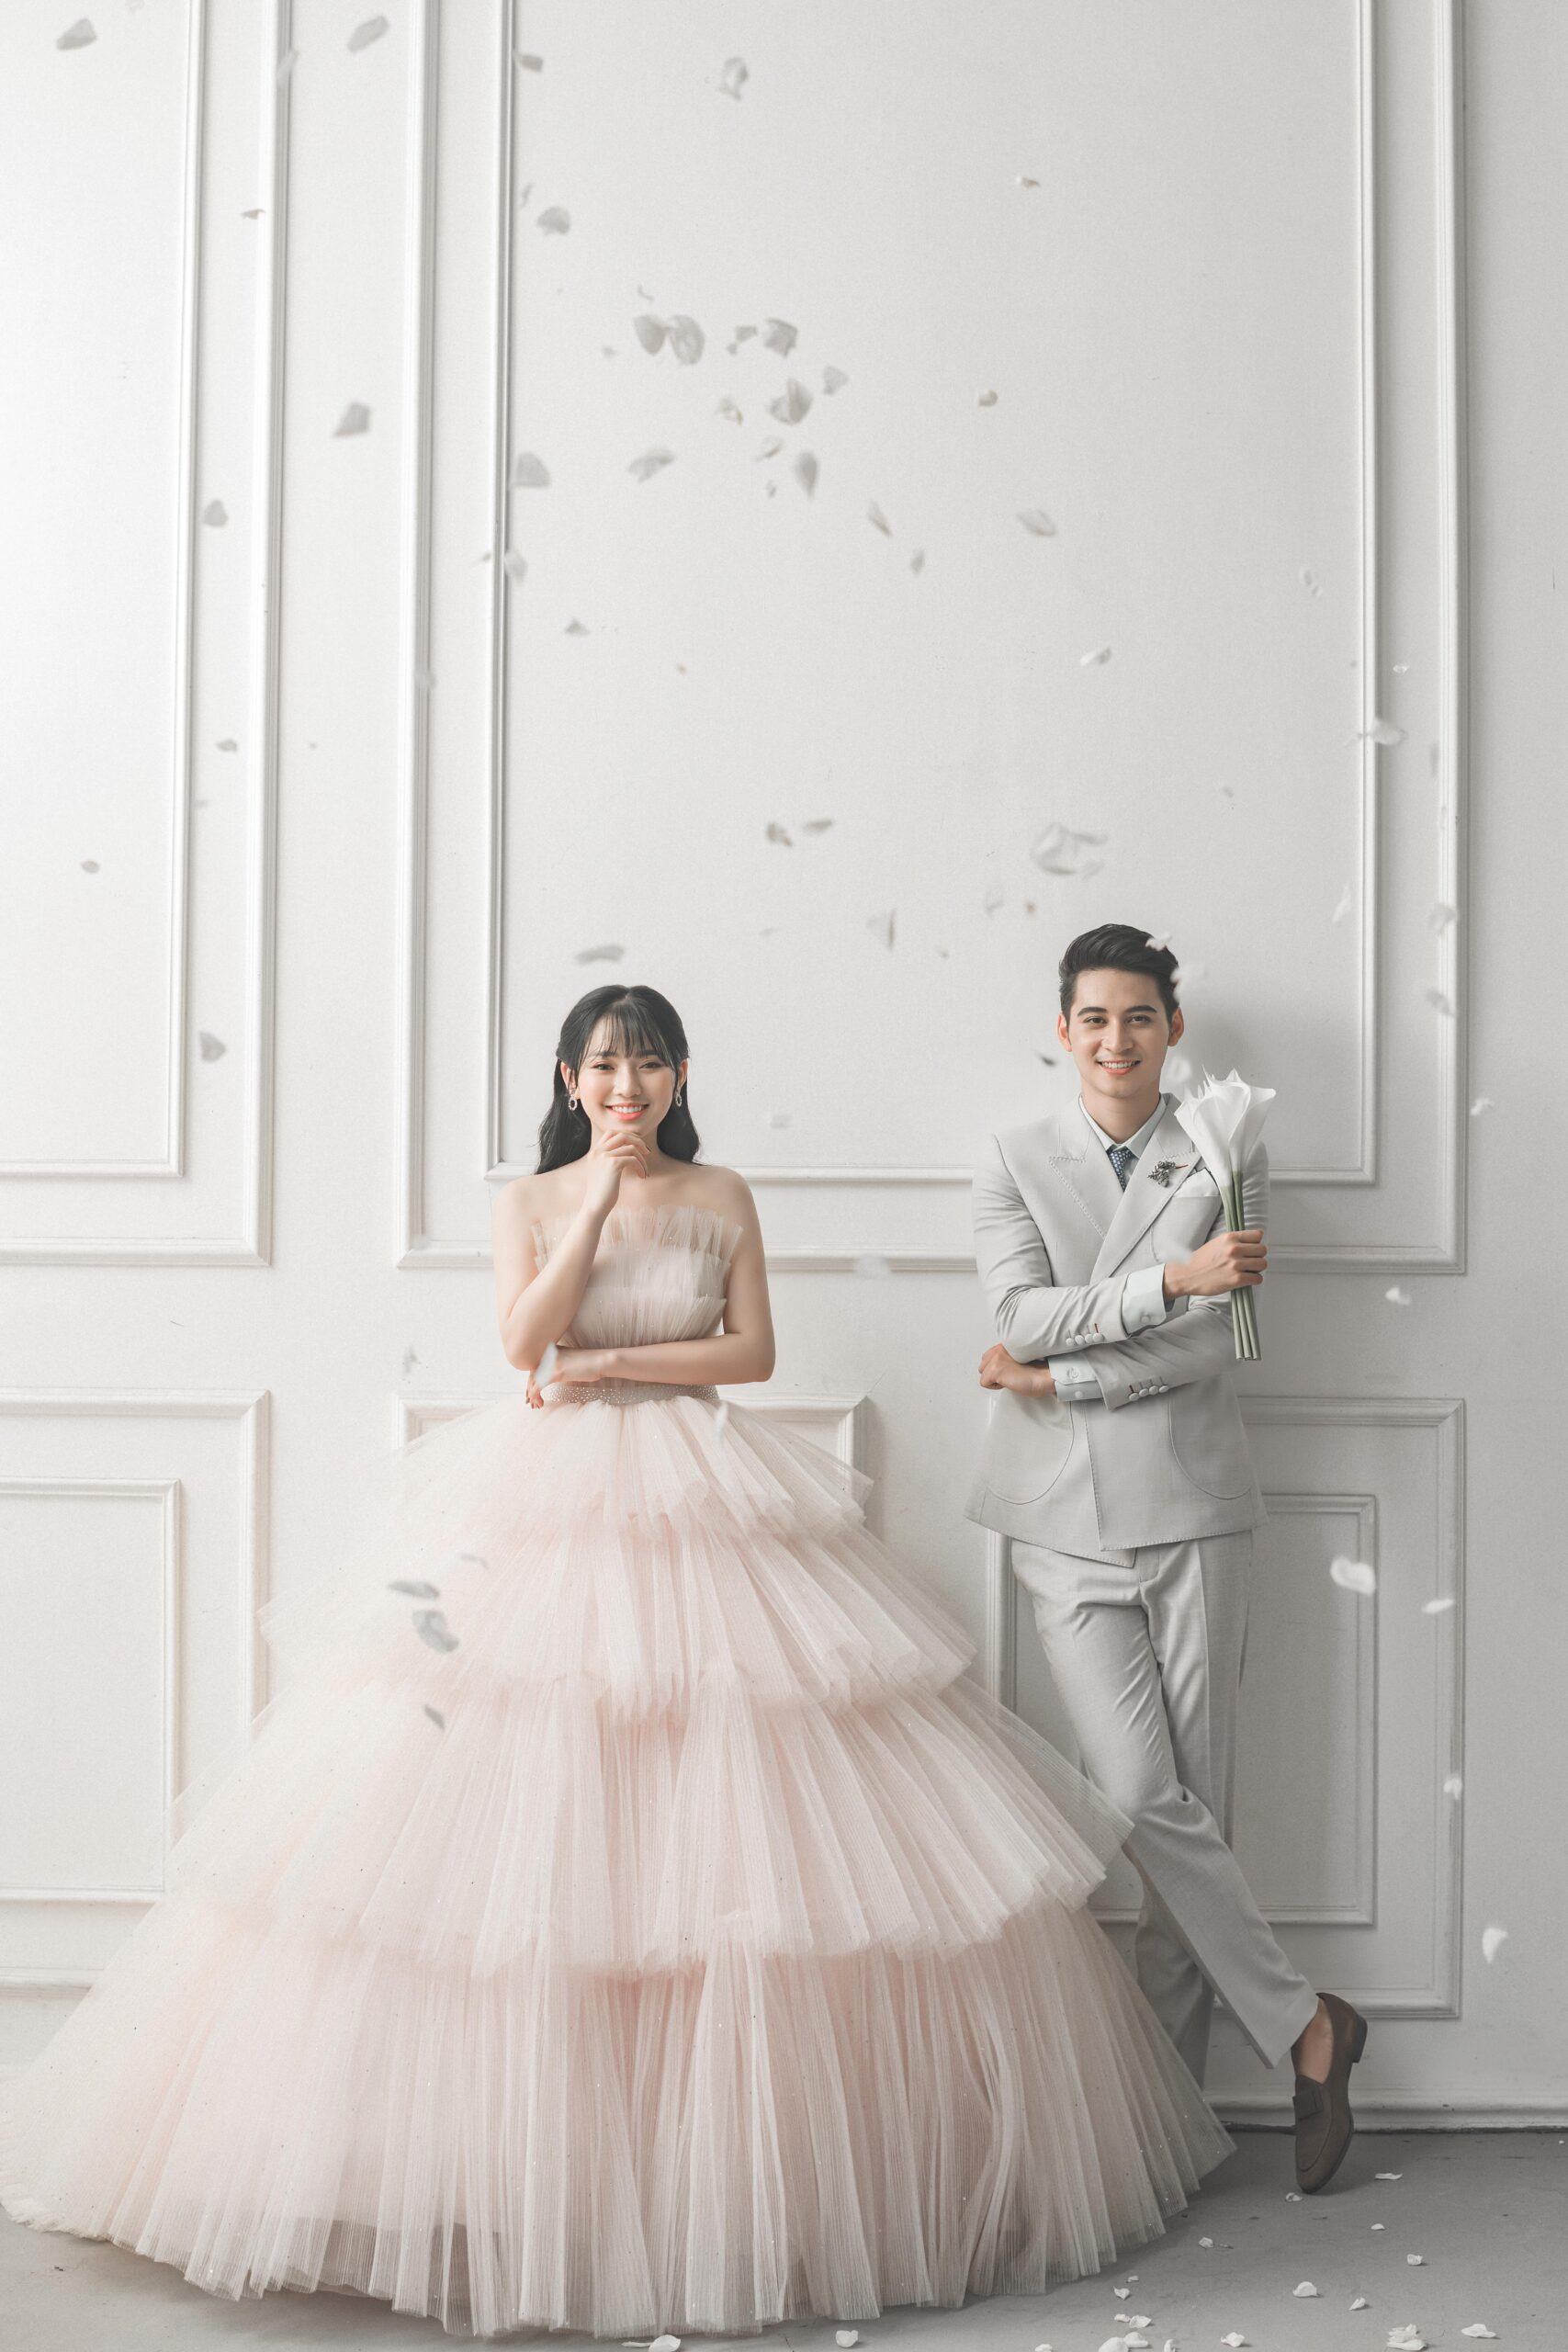 Top 10 mẫu váy cưới trễ vai đẹp quyến rũ nhất năm 2022